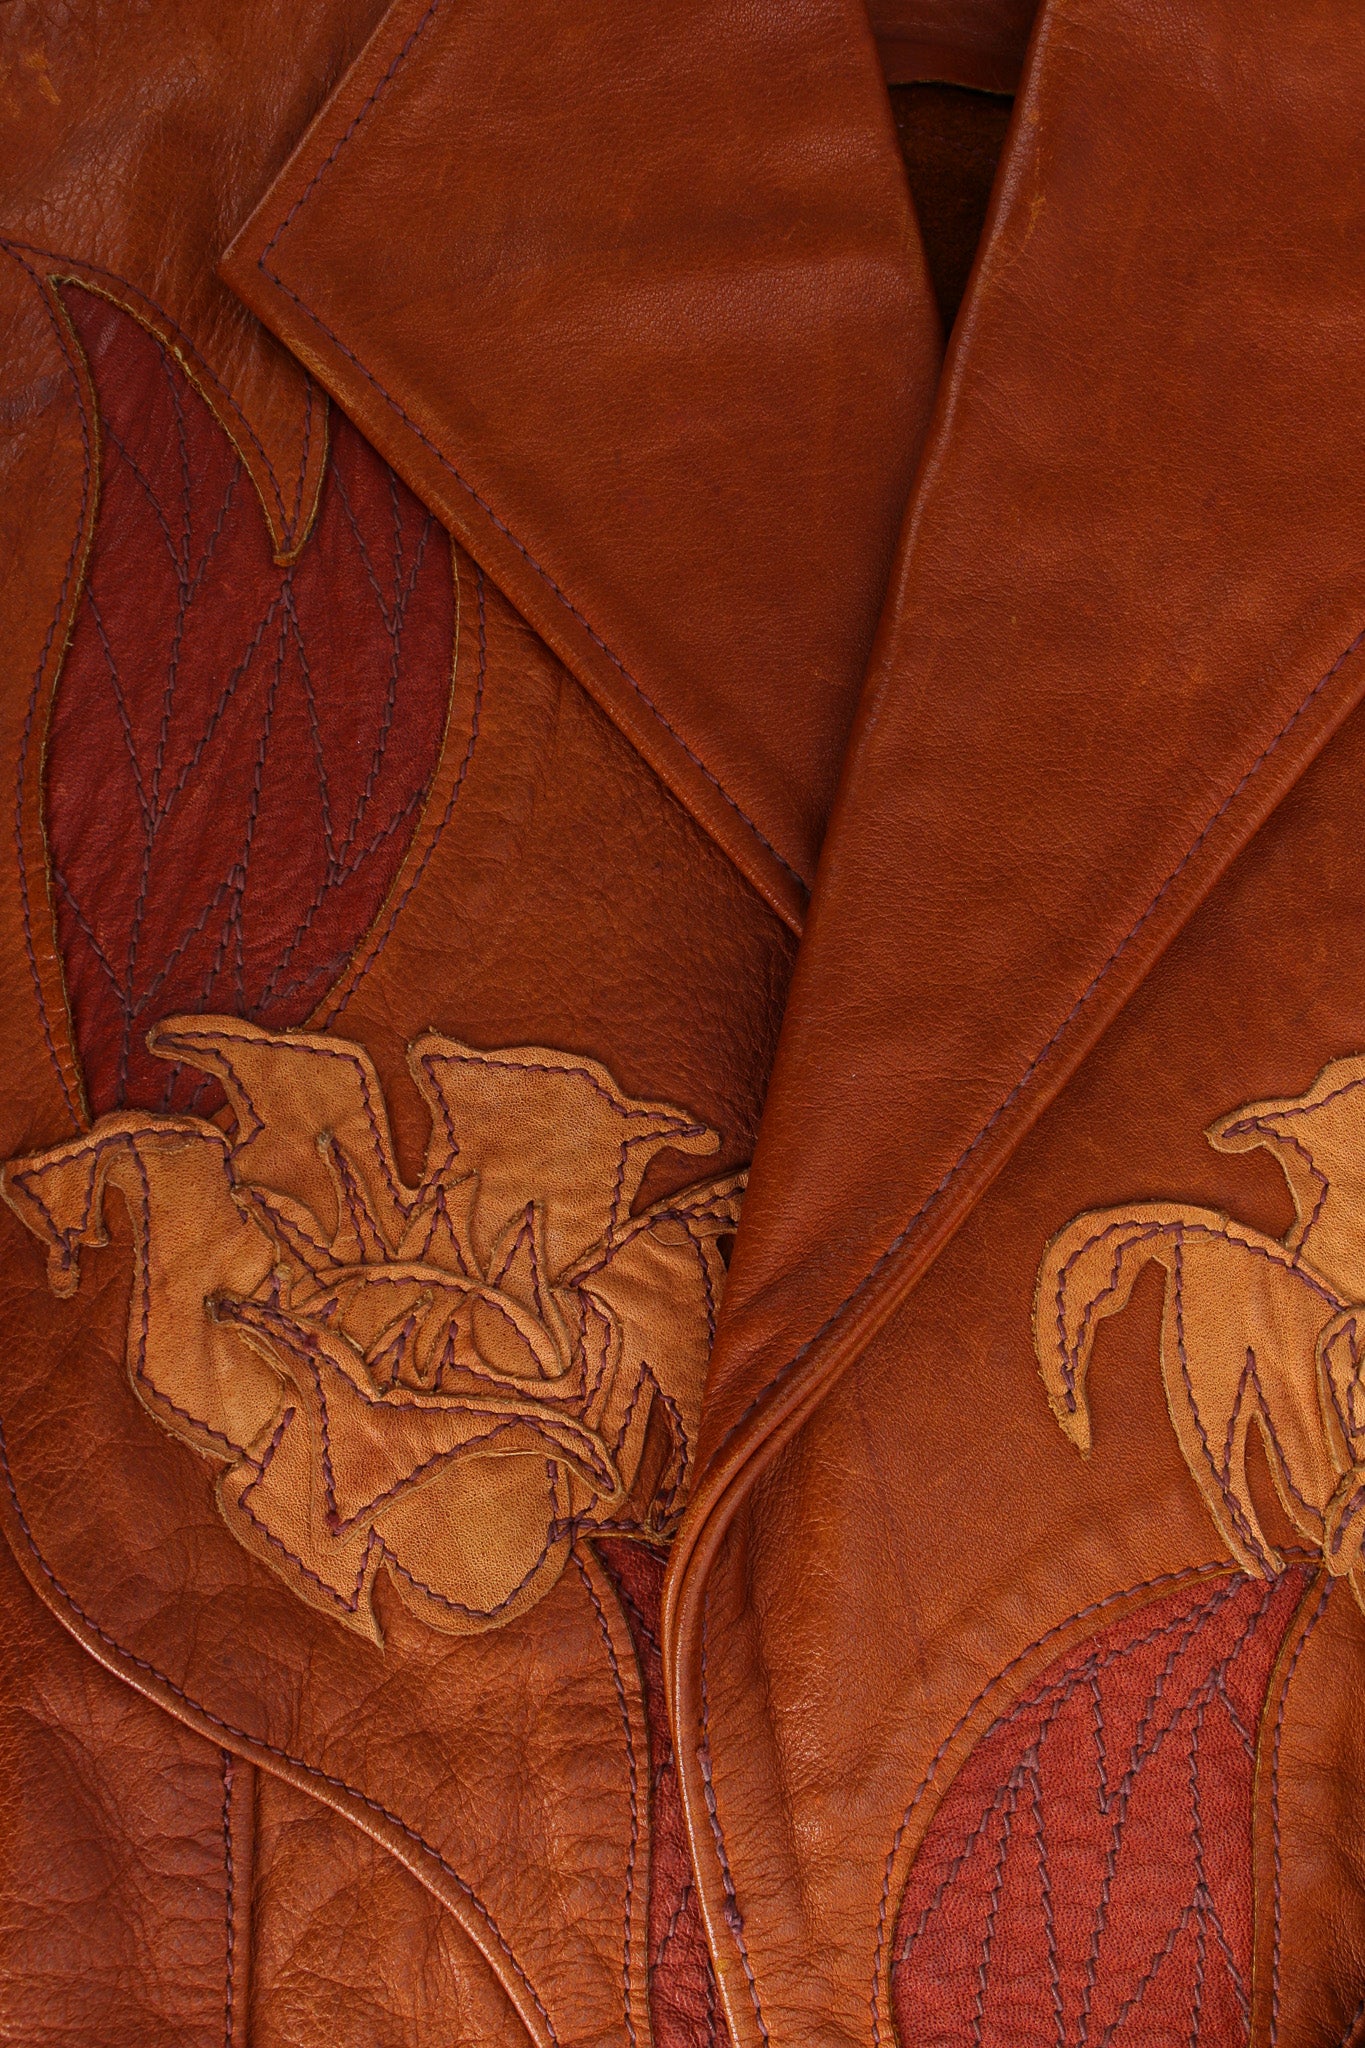 Vintage East West Musical Instruments Floral Appliqué Leather Jacket leather floral appliques @ Recess LA